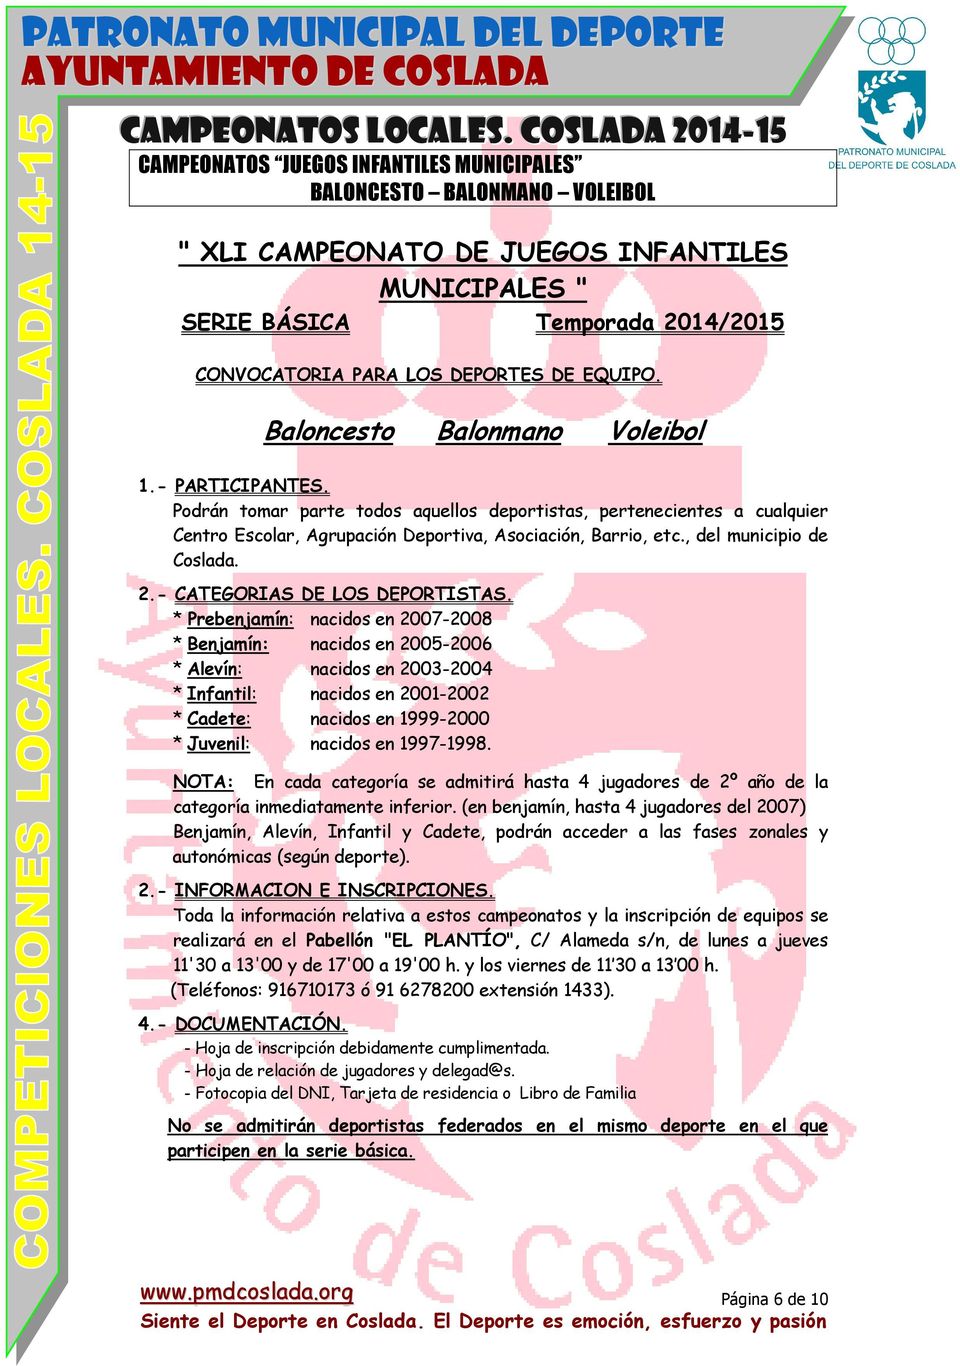 , del municipio de Coslada. 2.- CATEGORIAS DE LOS DEPORTISTAS.